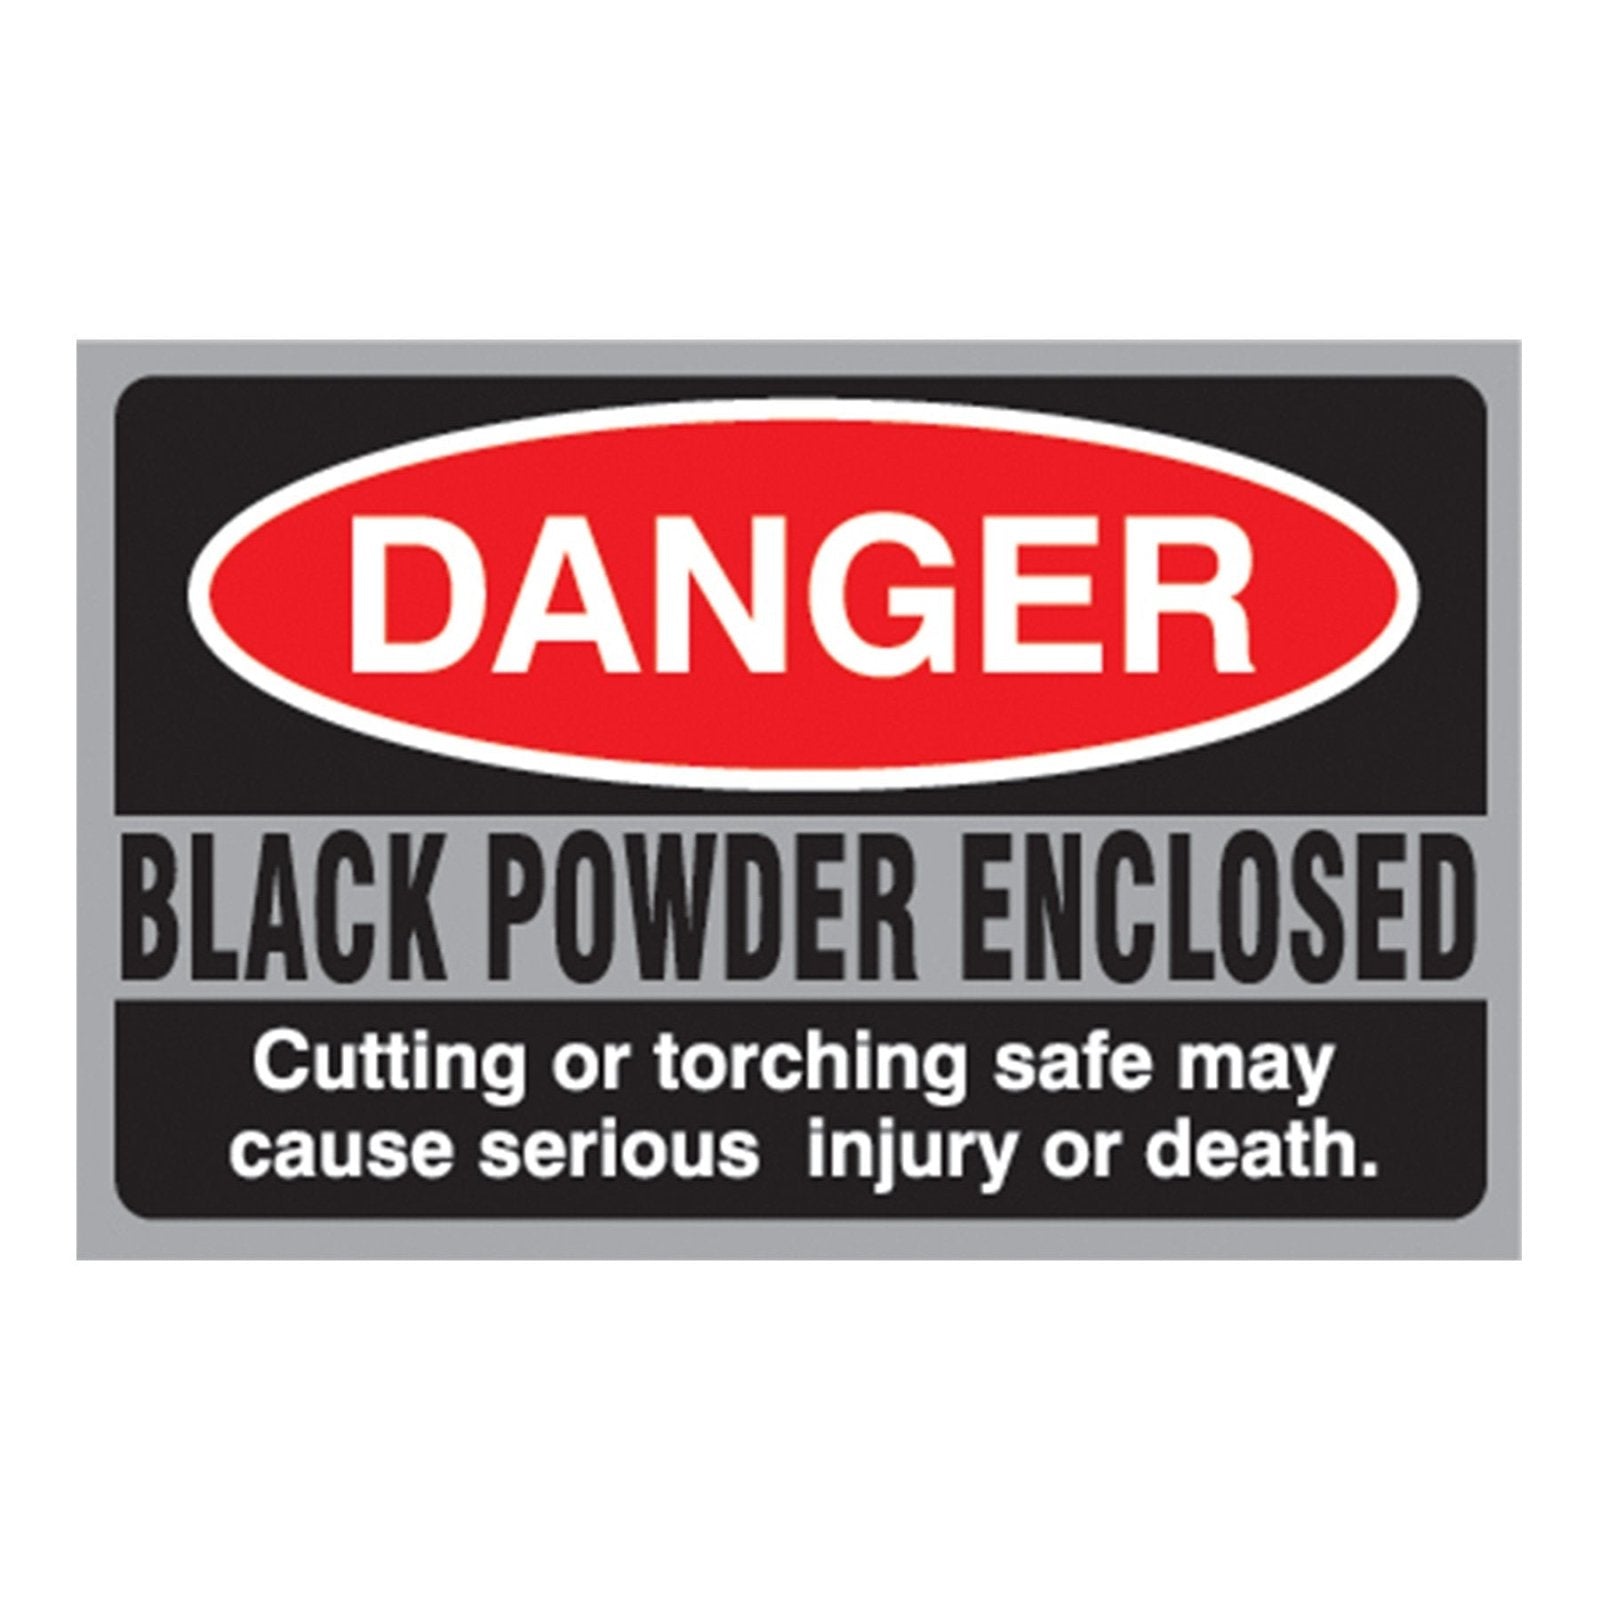 Black Powder Danger Sticker - Northwest Safe